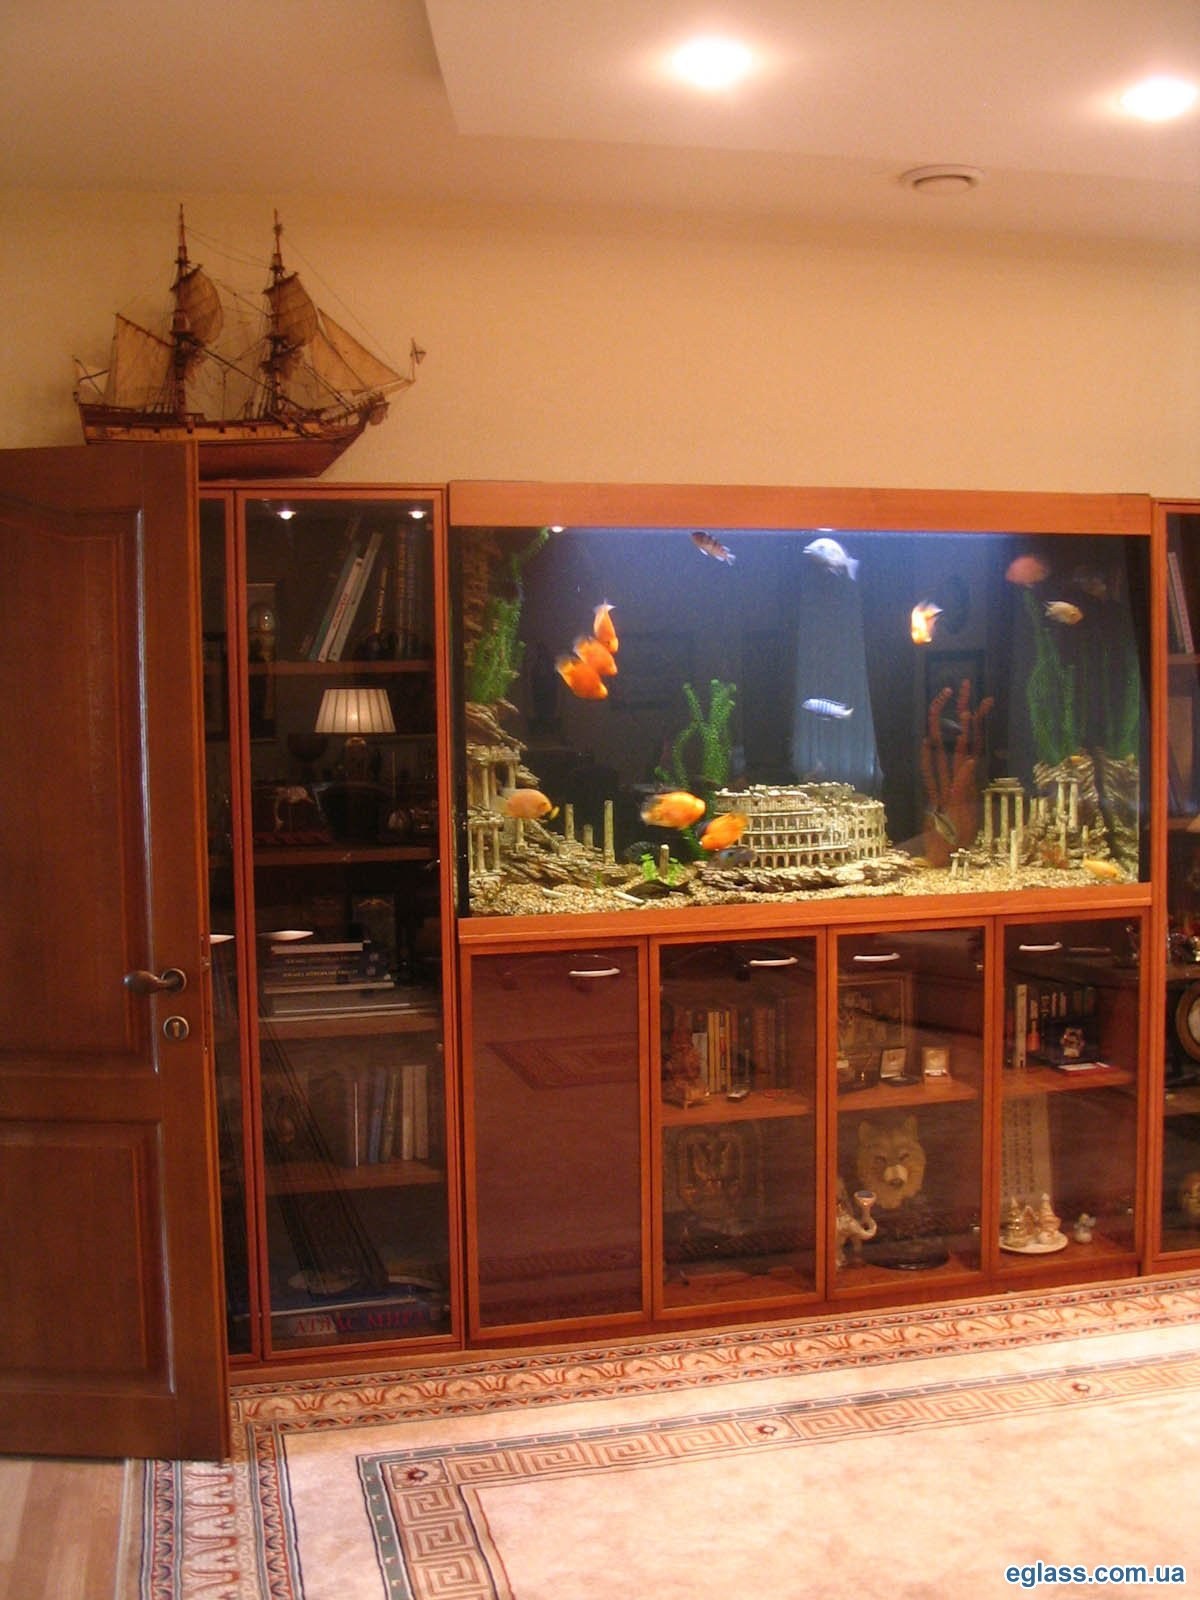 Стенка с аквариумом